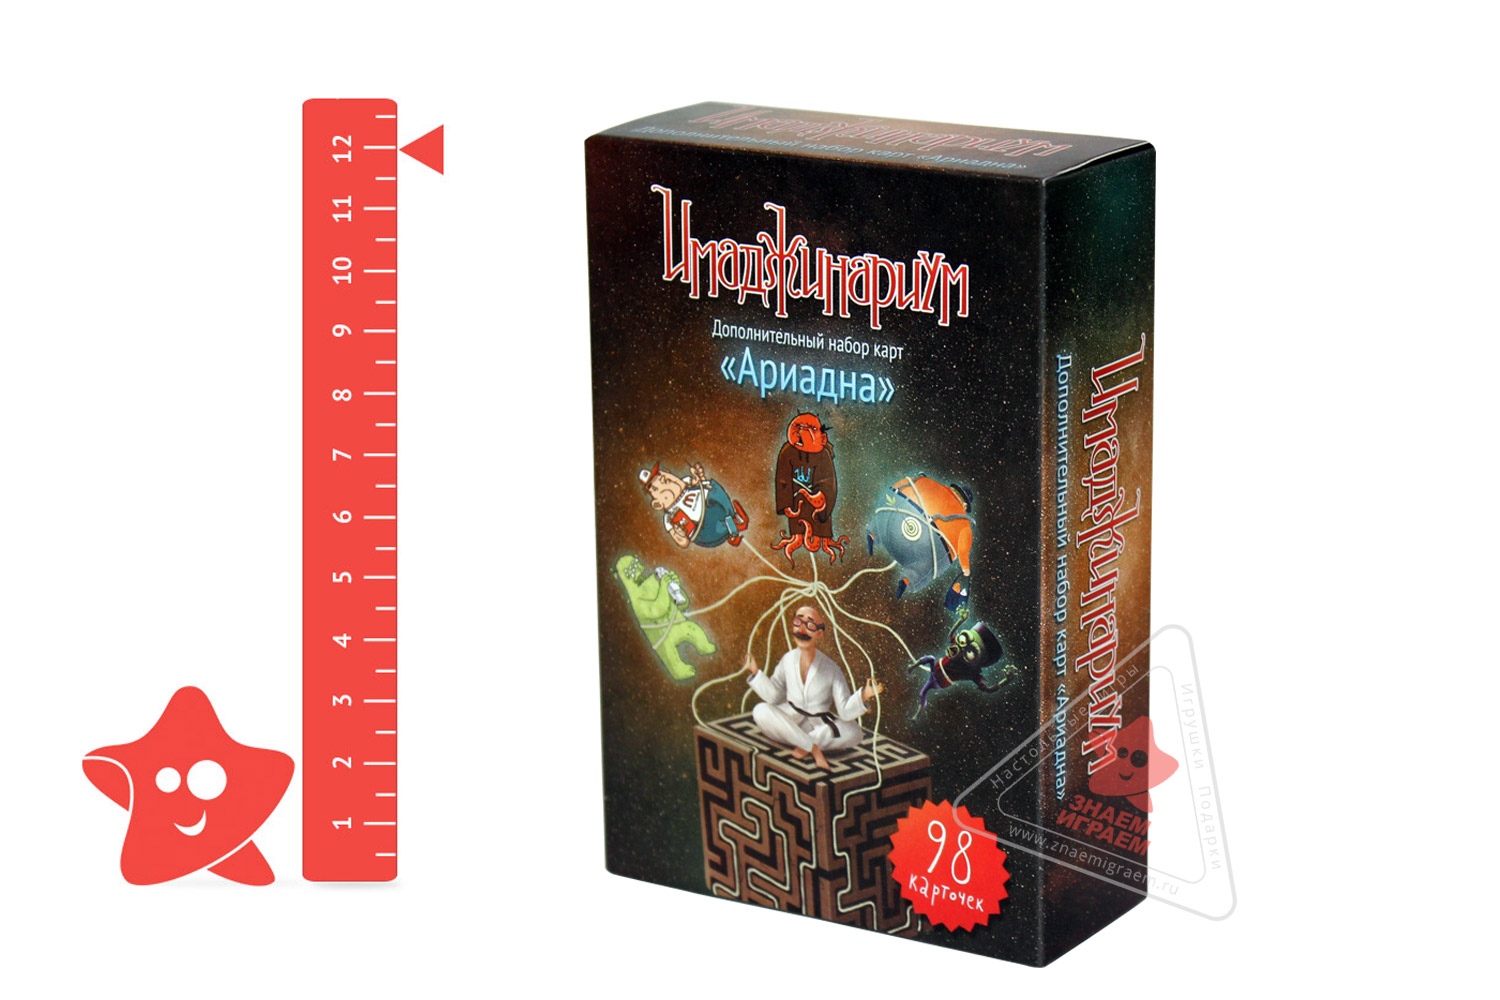 Размер коробки настольной игры Имаджинариум дополнение Ариаднадна